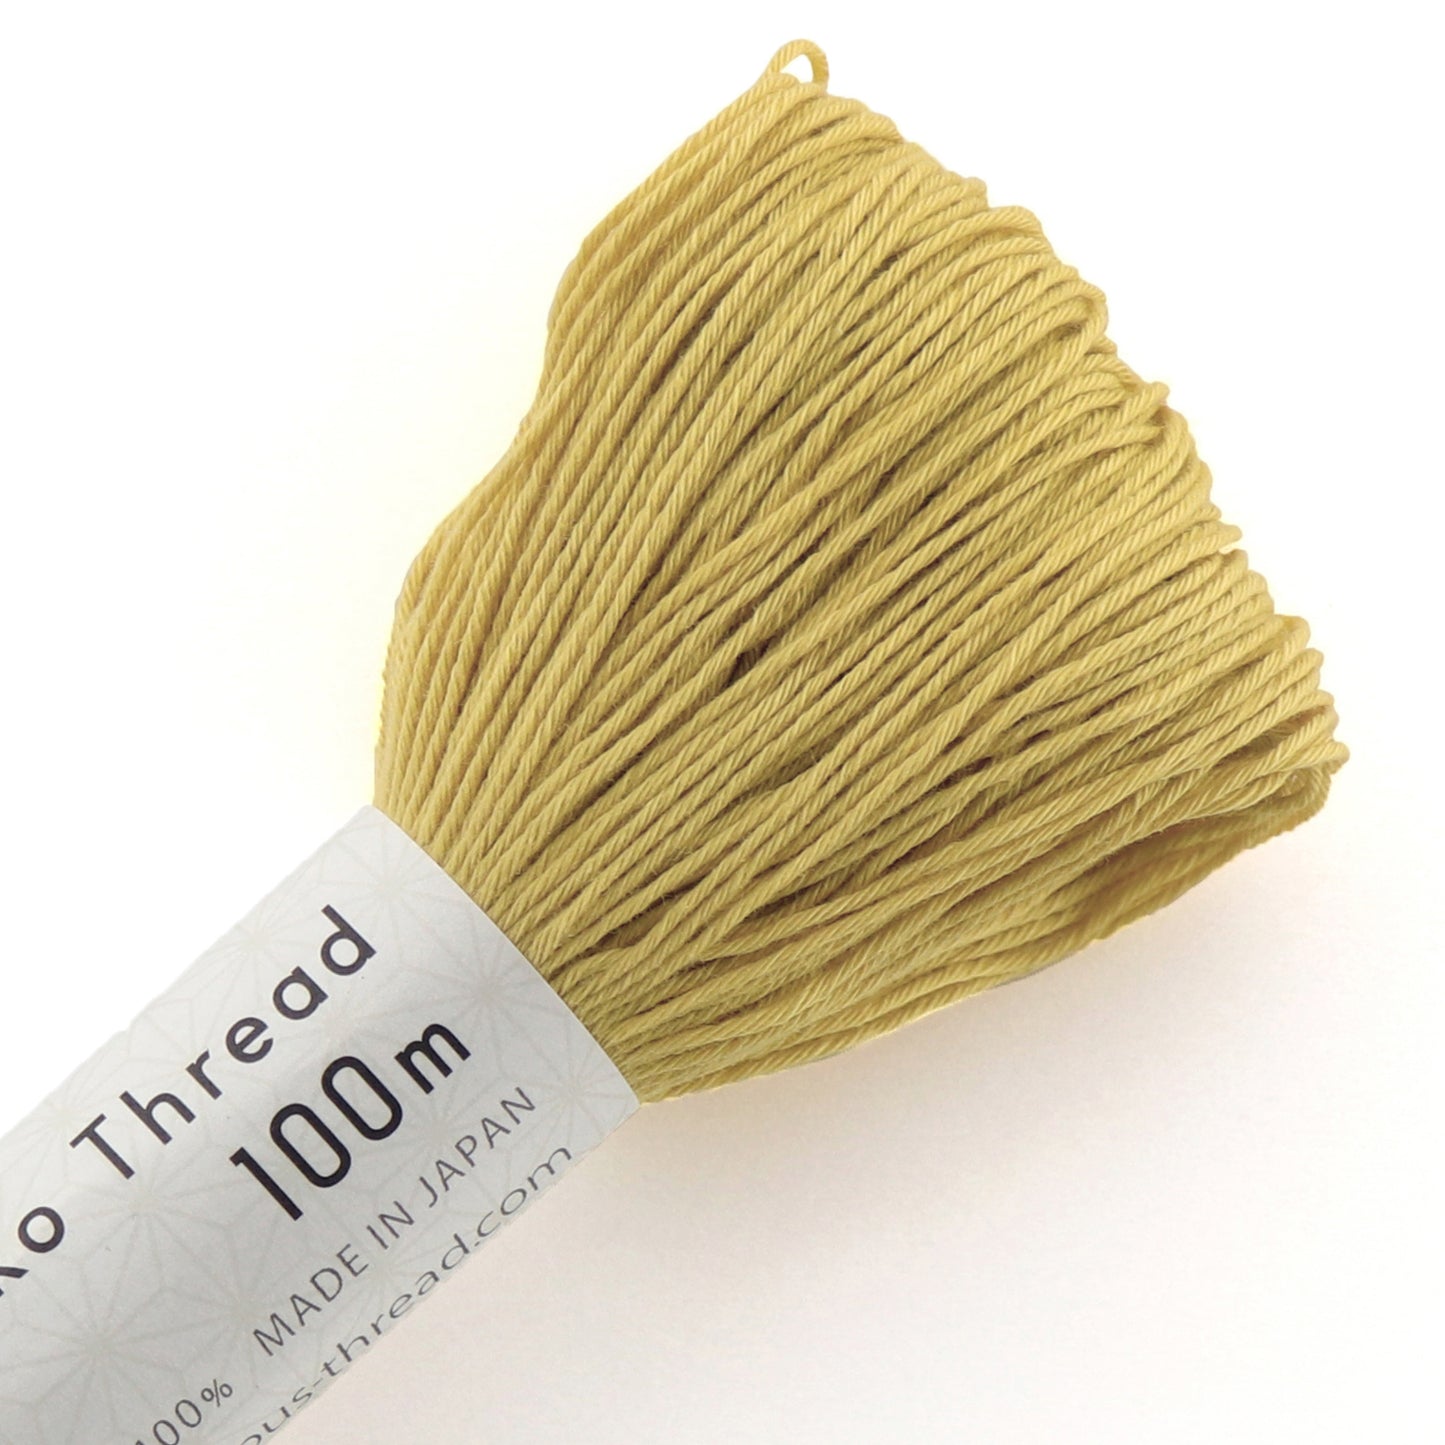 Olympus #106 Japanese cotton Sashiko thread WHEAT 100 meter skein